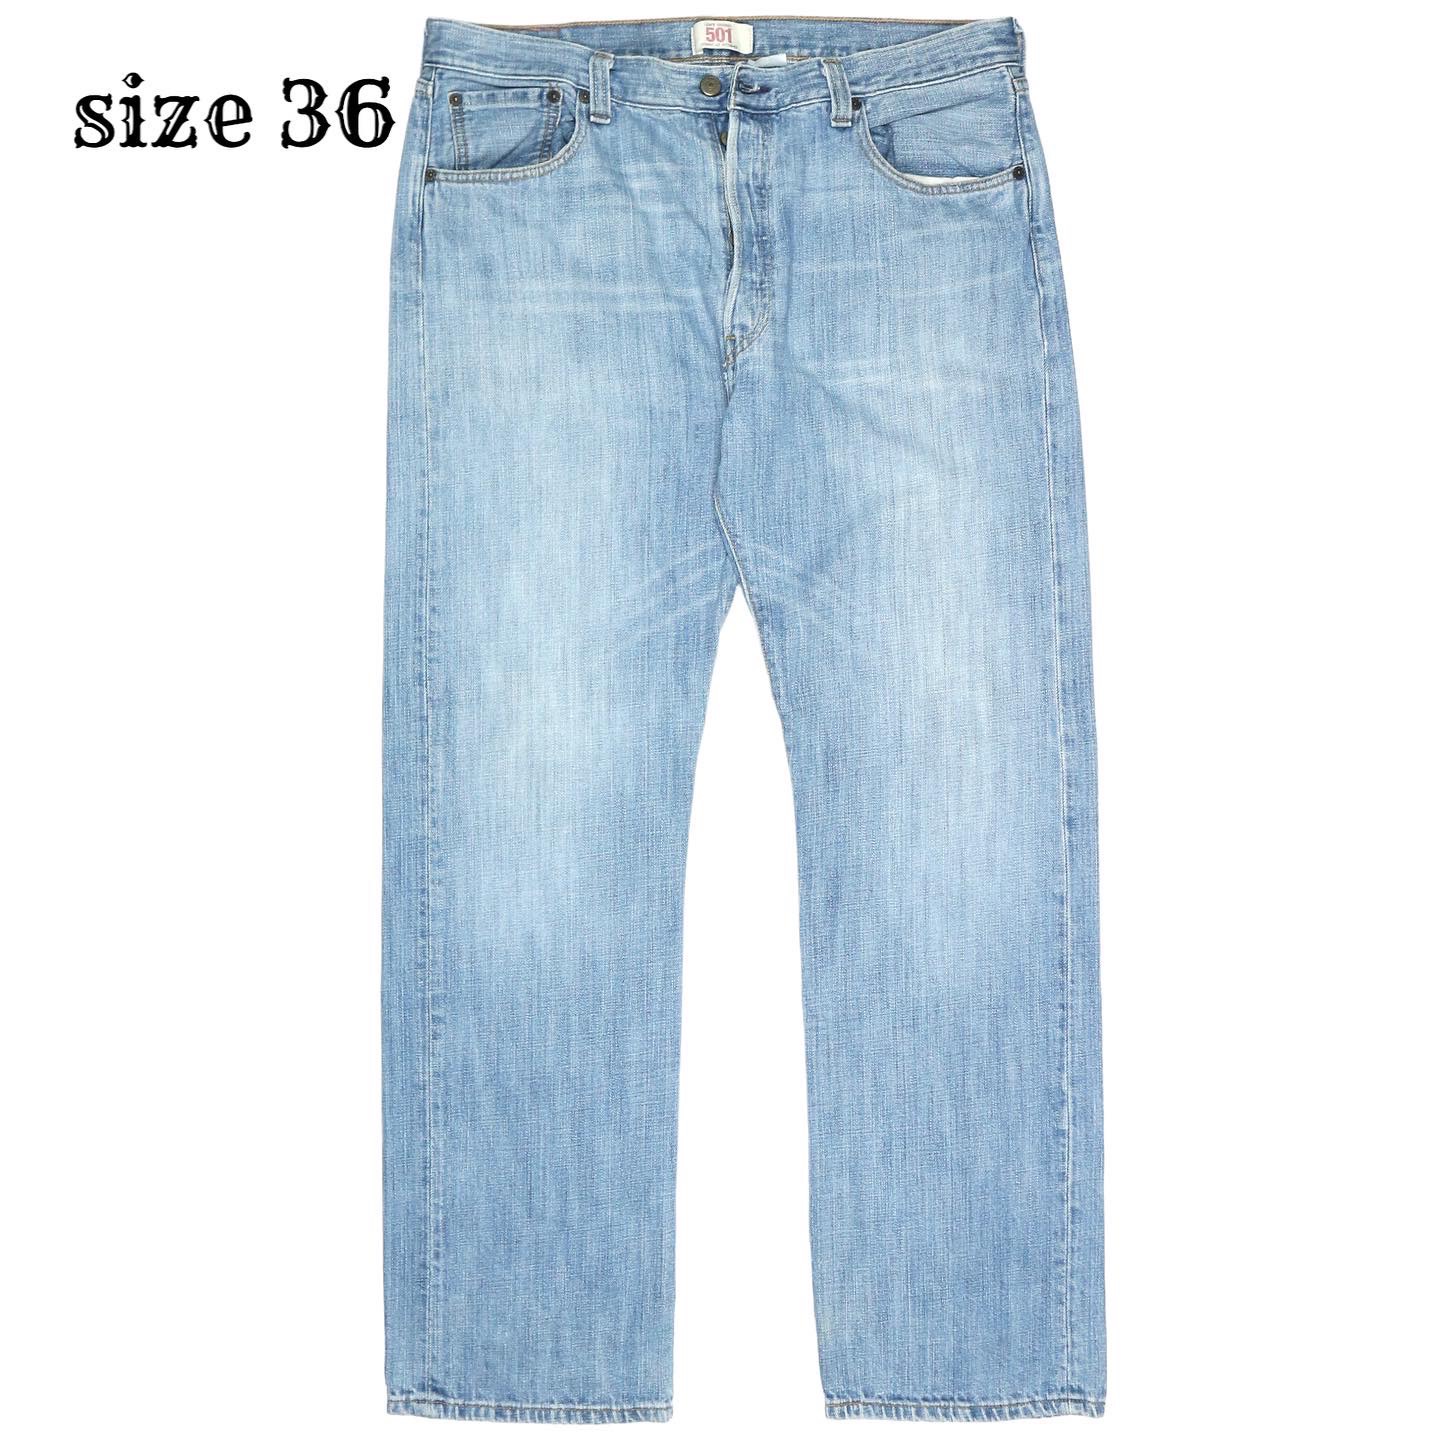 Levi’s 501 Jeans Size 36